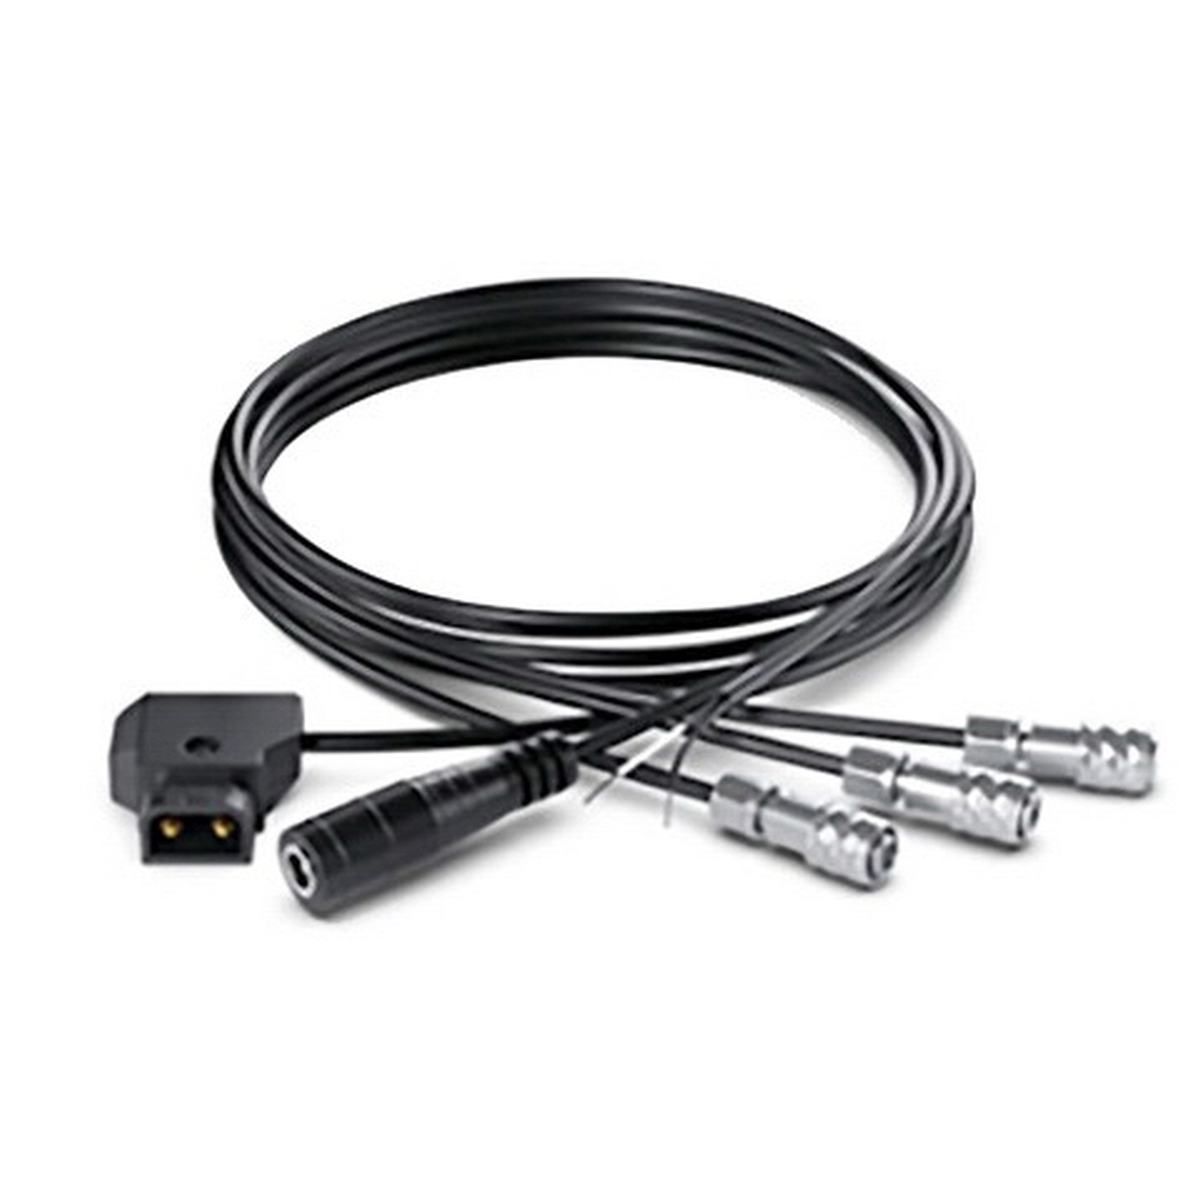 Blackmagic DC Cable Pack